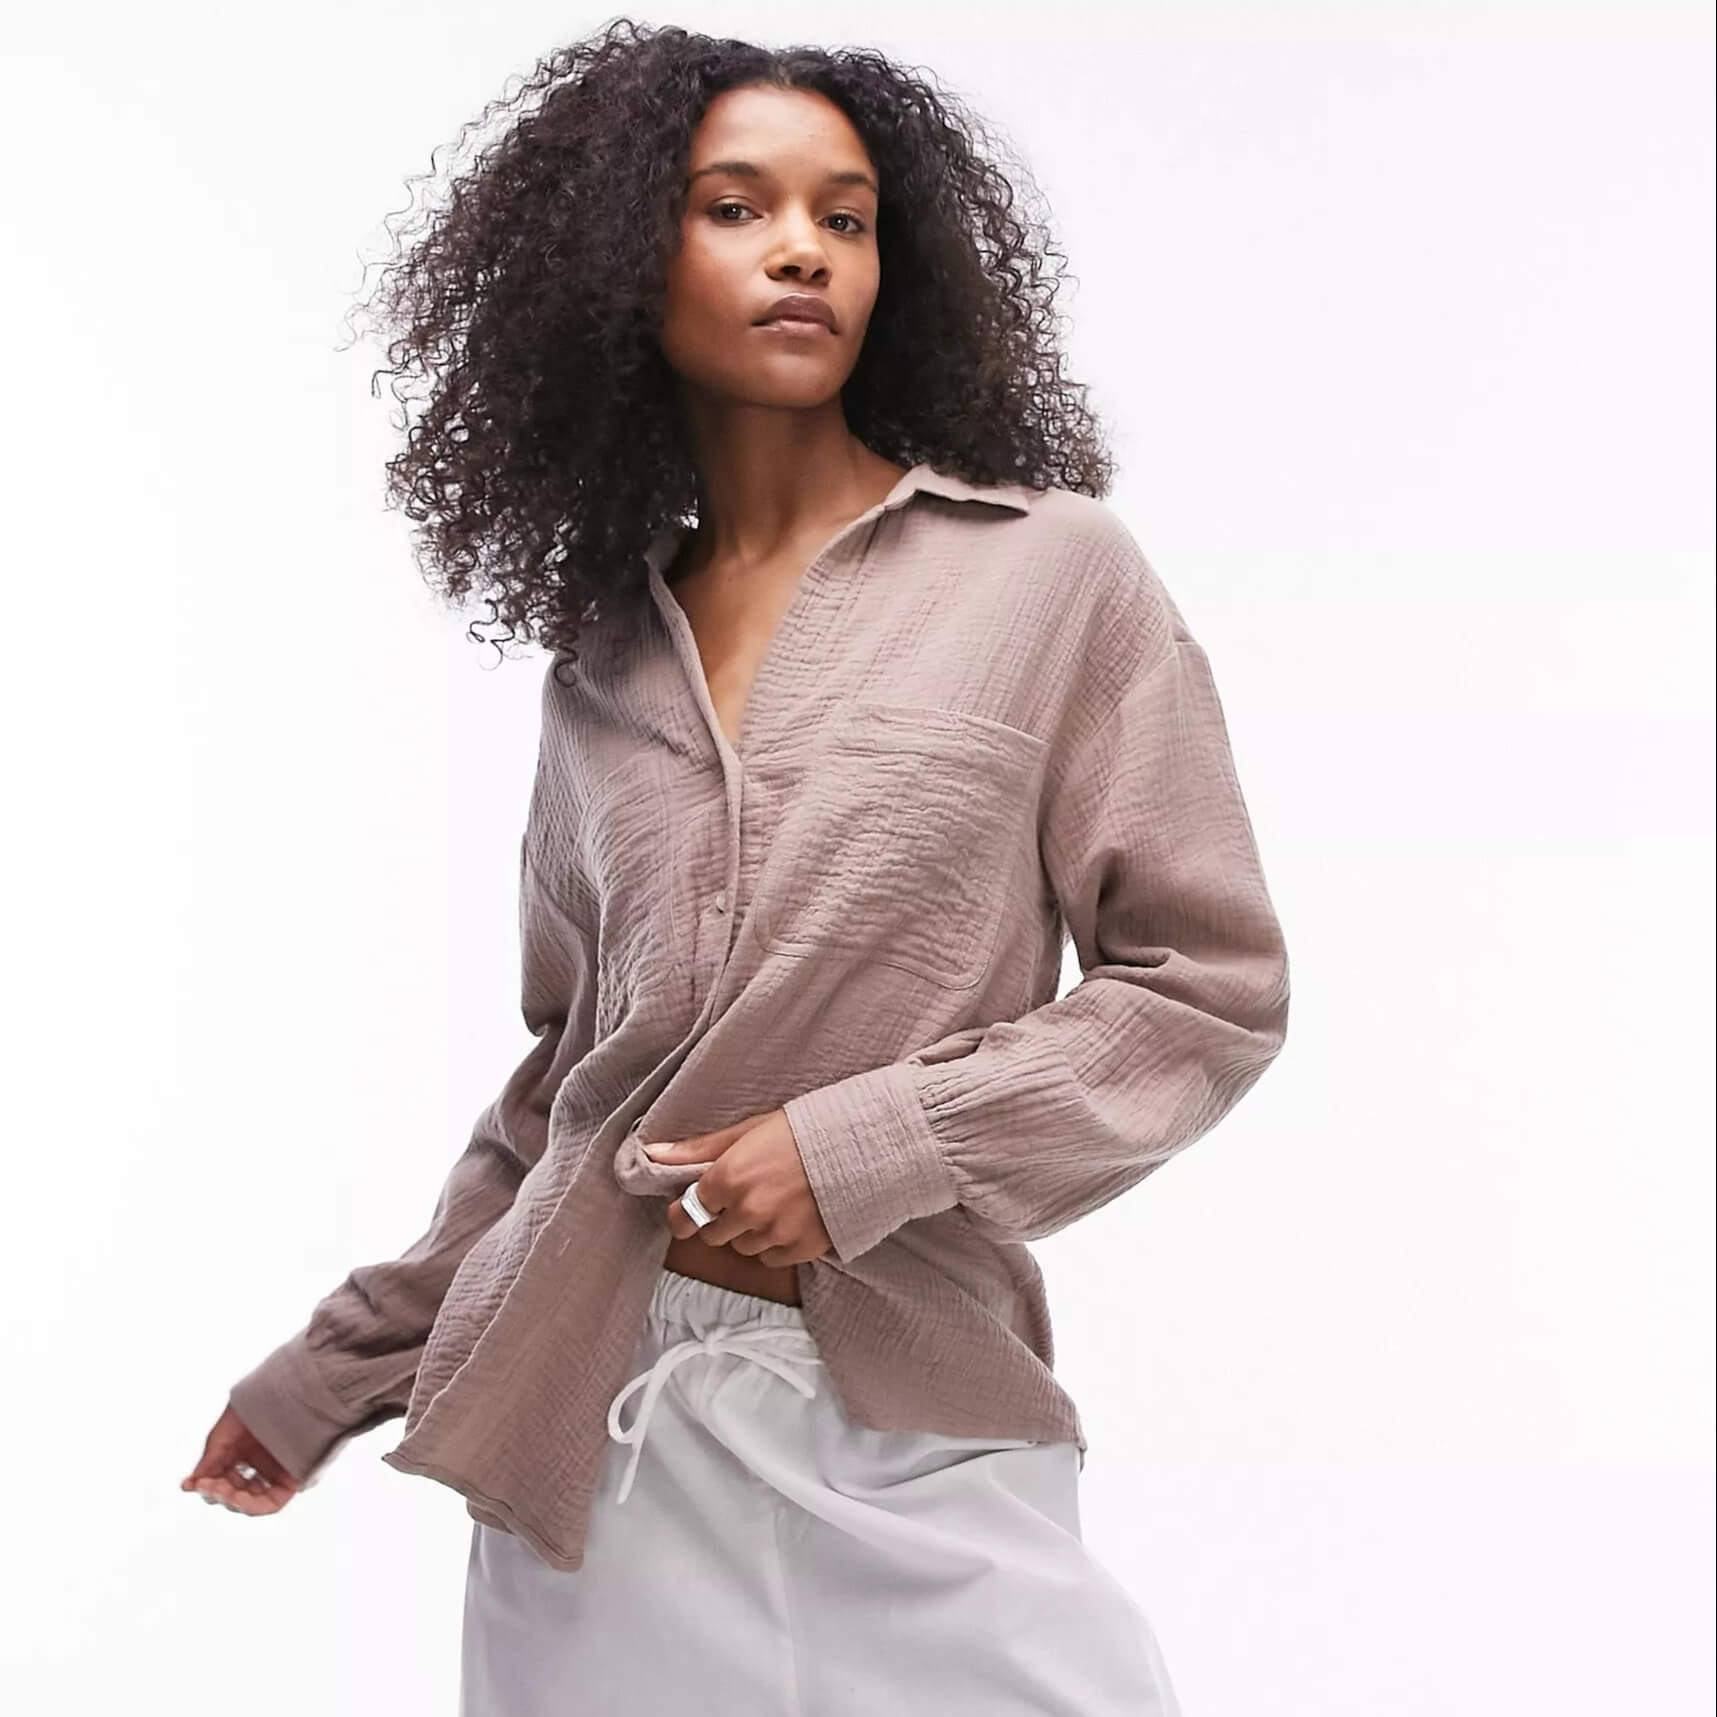 Рубашка Topshop Cotton Casual, бежевый женская рубашка в горошек с отложным воротником и длинным рукавом